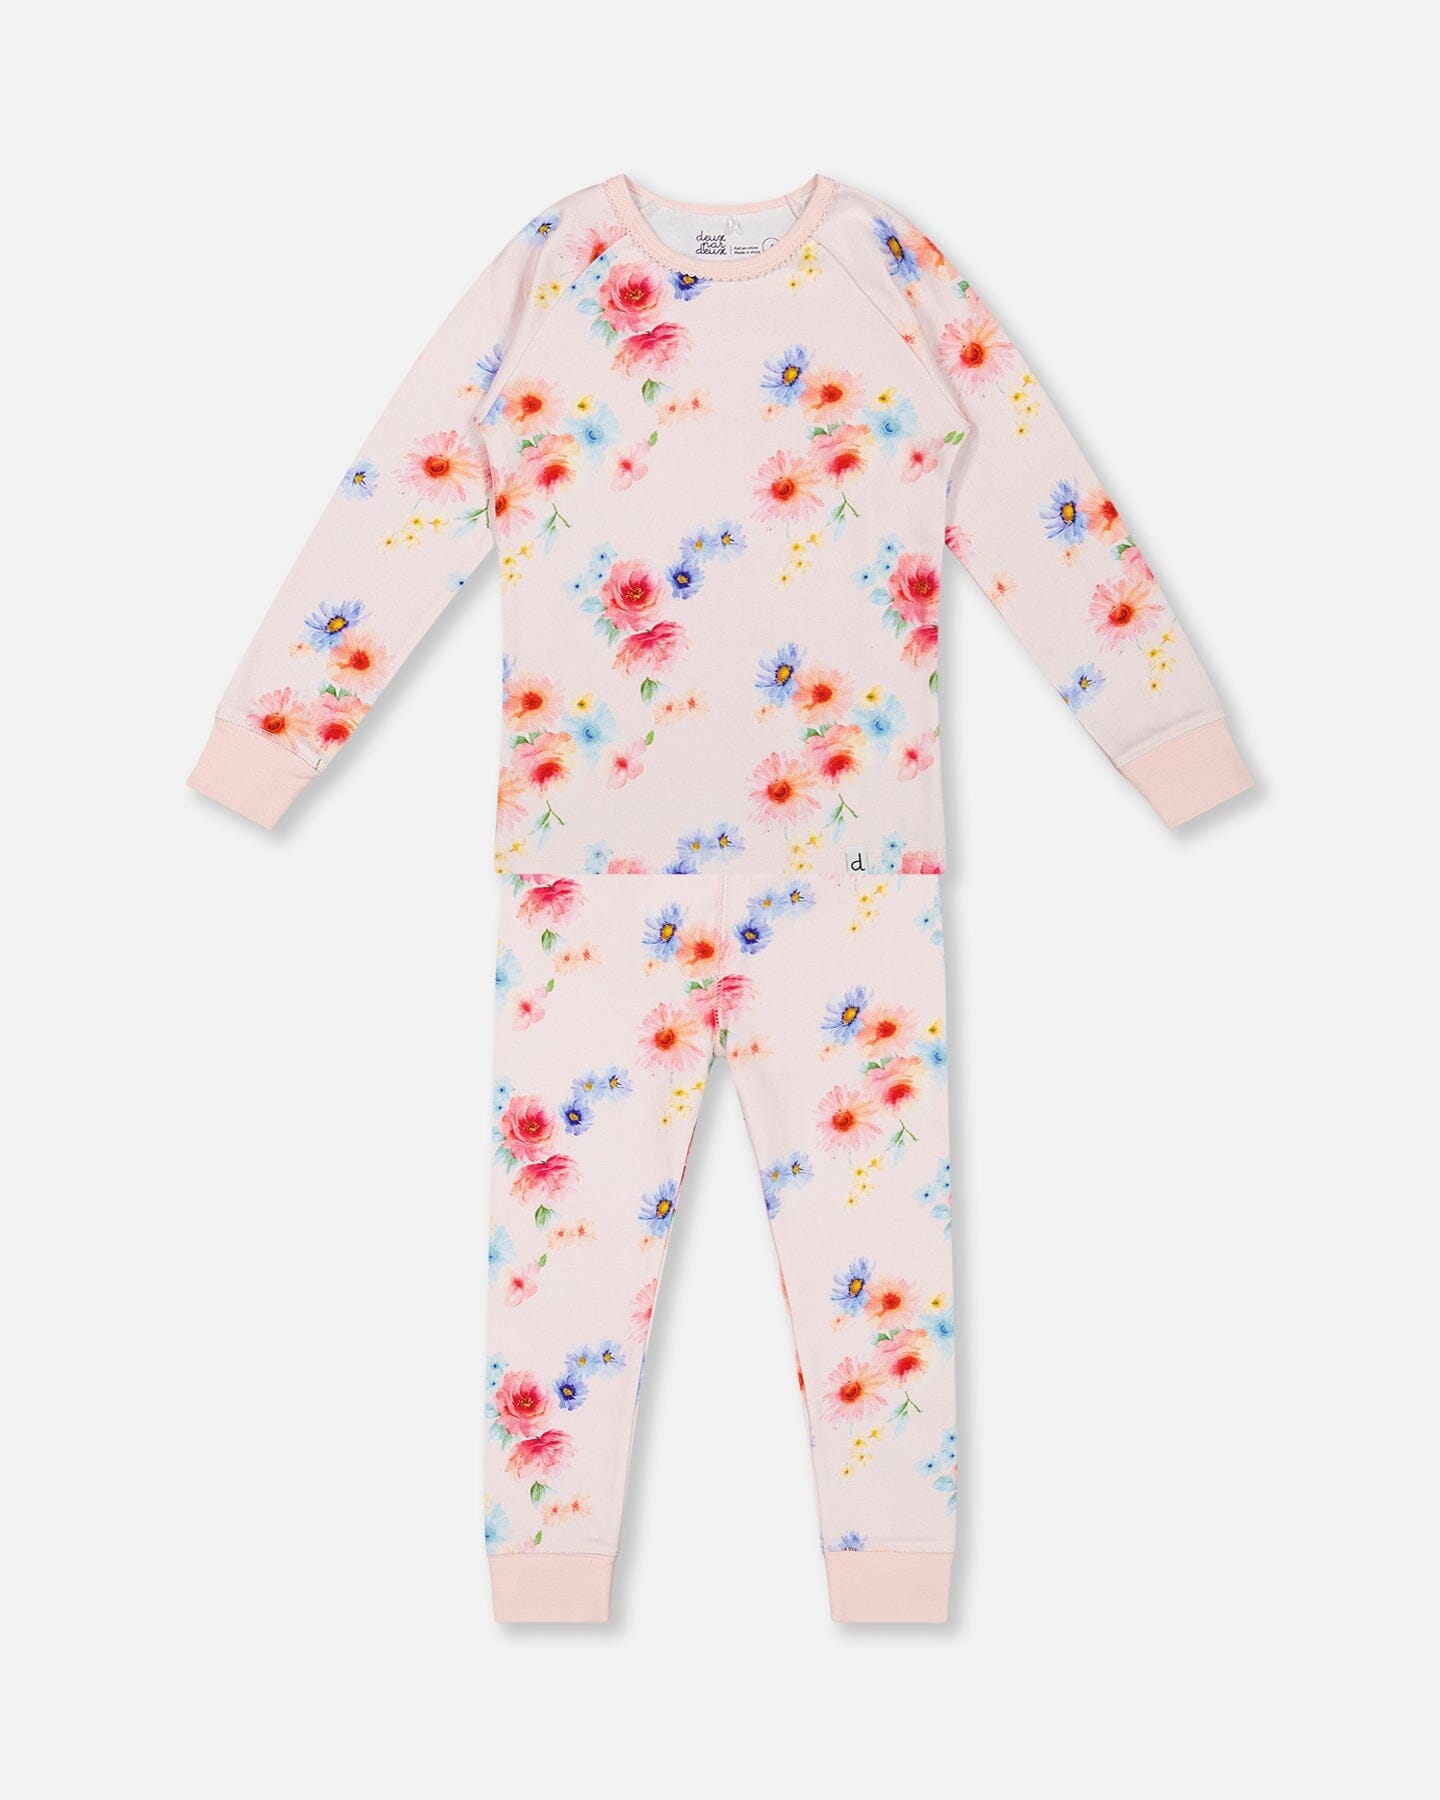 Pyjama deux pièces manches longues en coton bio imprimé fleurs rose clair - f30pg15us_072